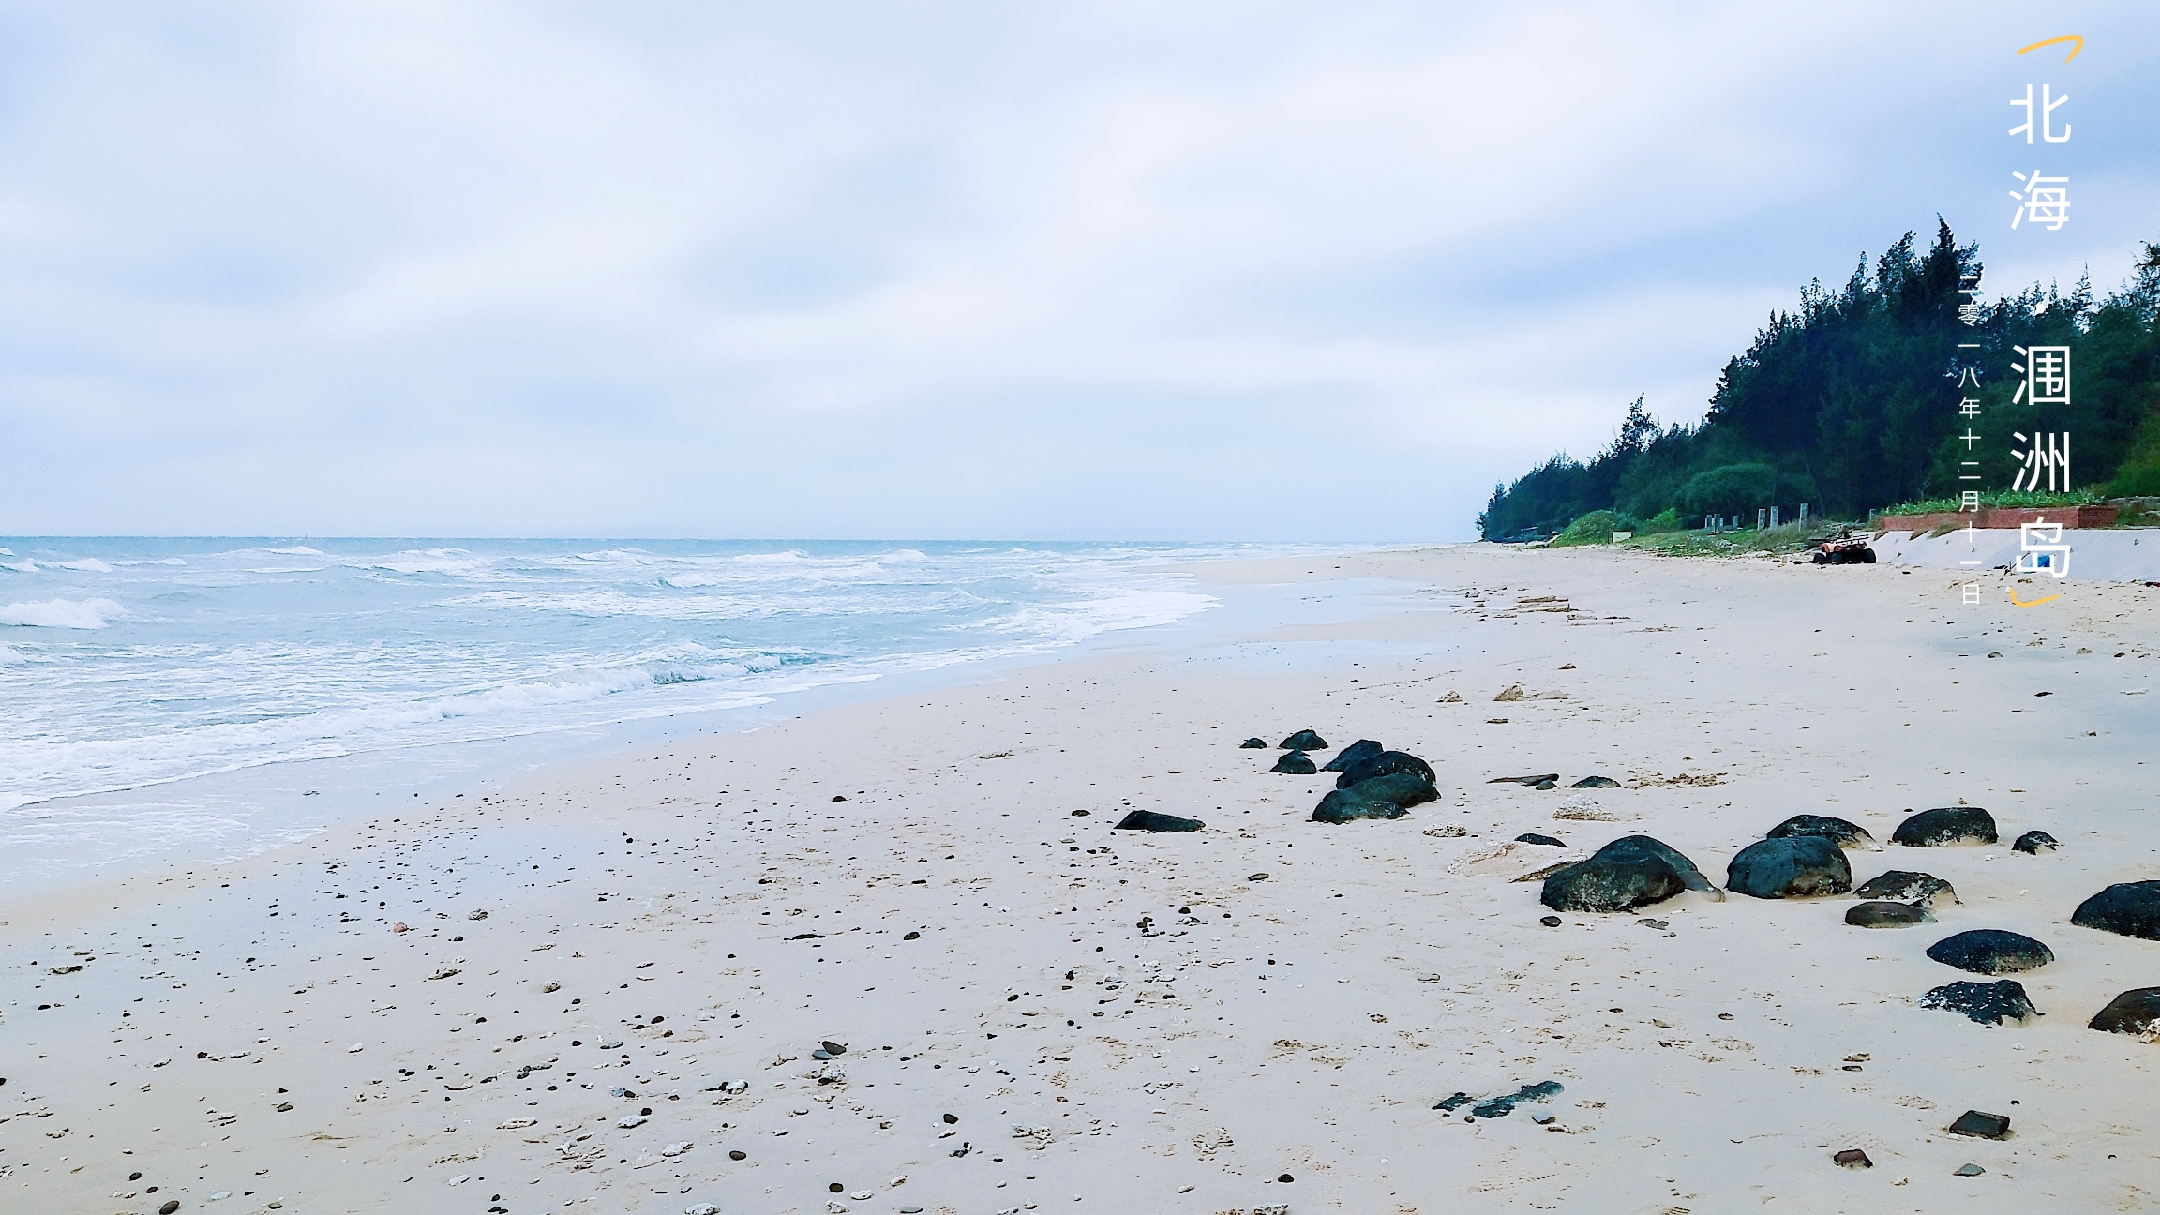 涠洲岛贝壳沙滩,被誉为日出海岸,为北部湾海域最佳日出观看点